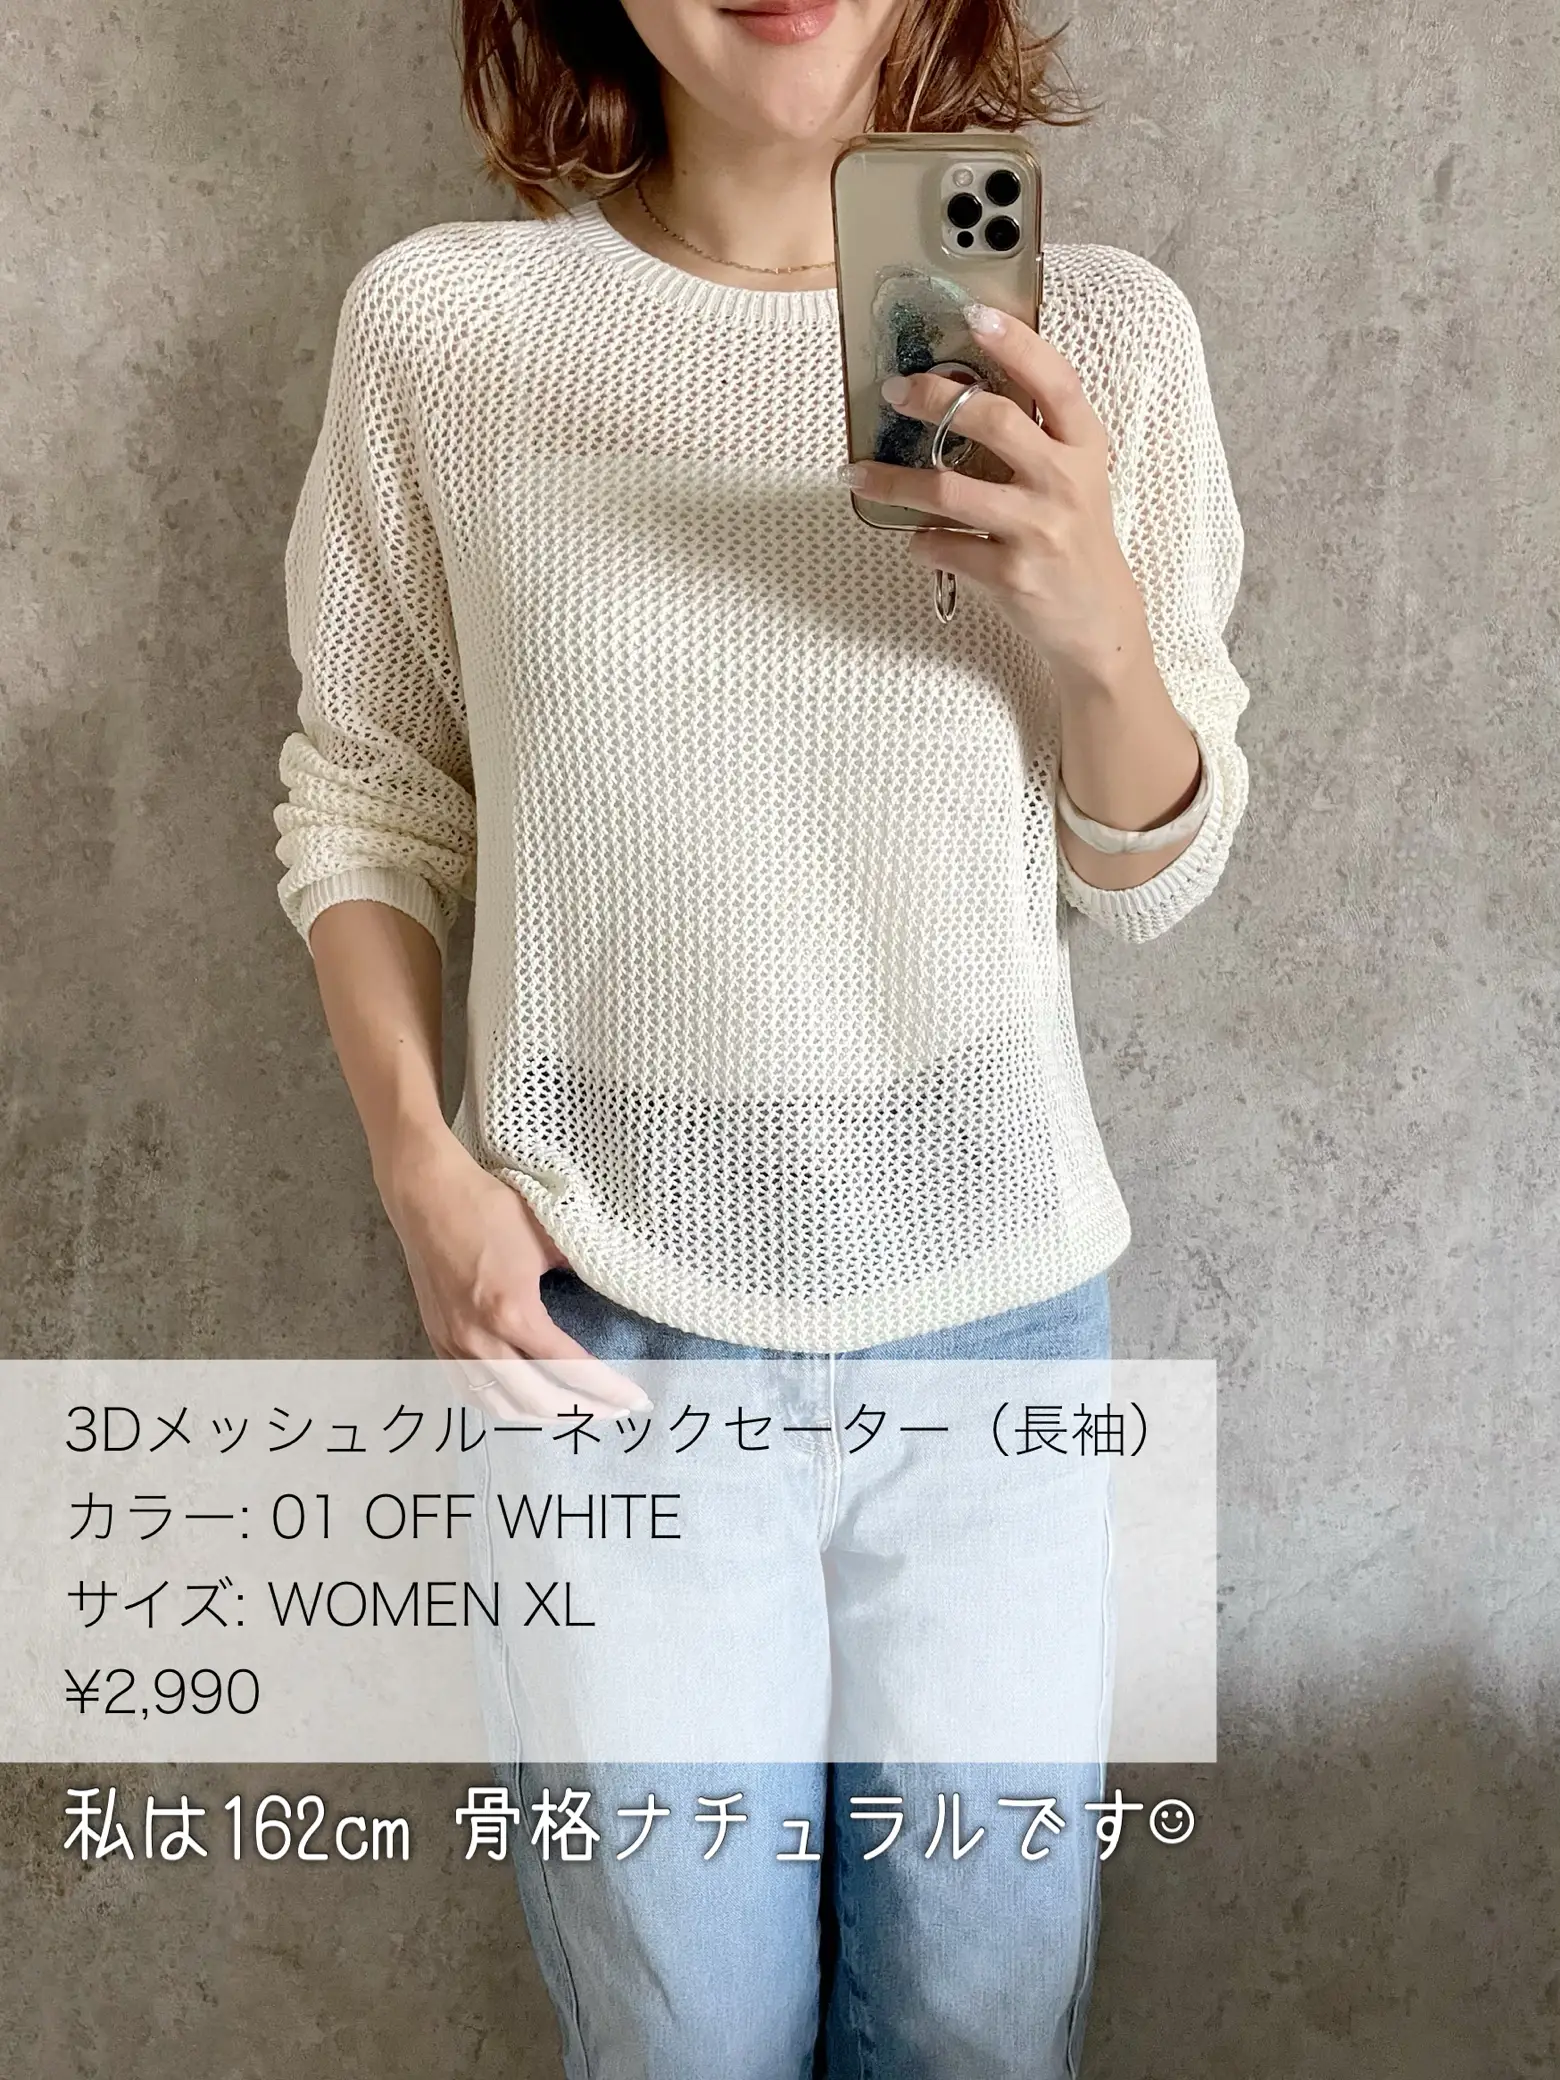 ユニクロ 3Dメッシュクルーネックセーター - ニット